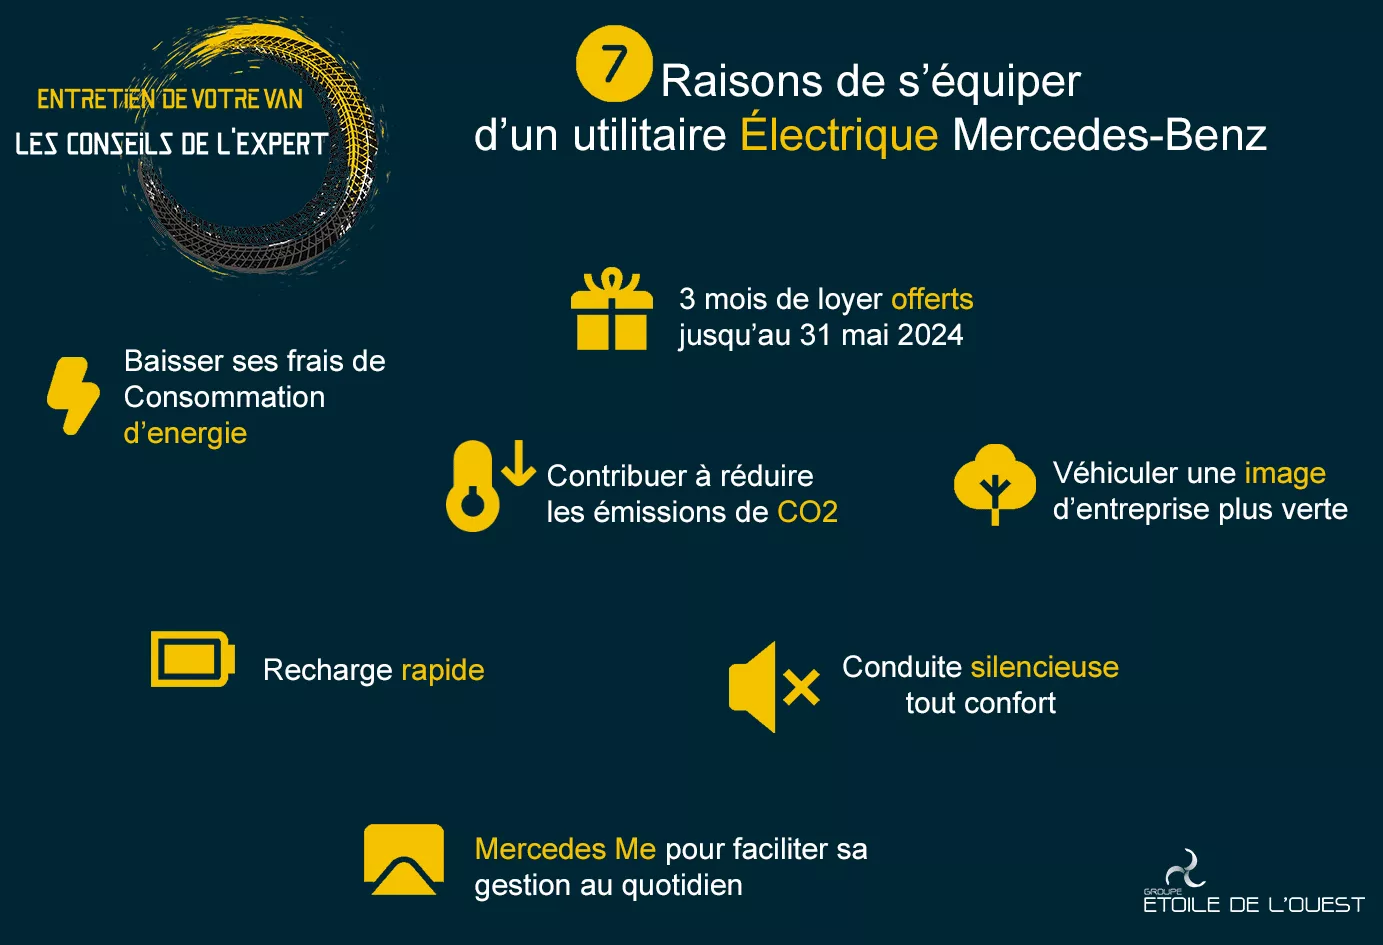 7 raisons de s’équiper d’un utilitaire électrique Mercedes-Benz